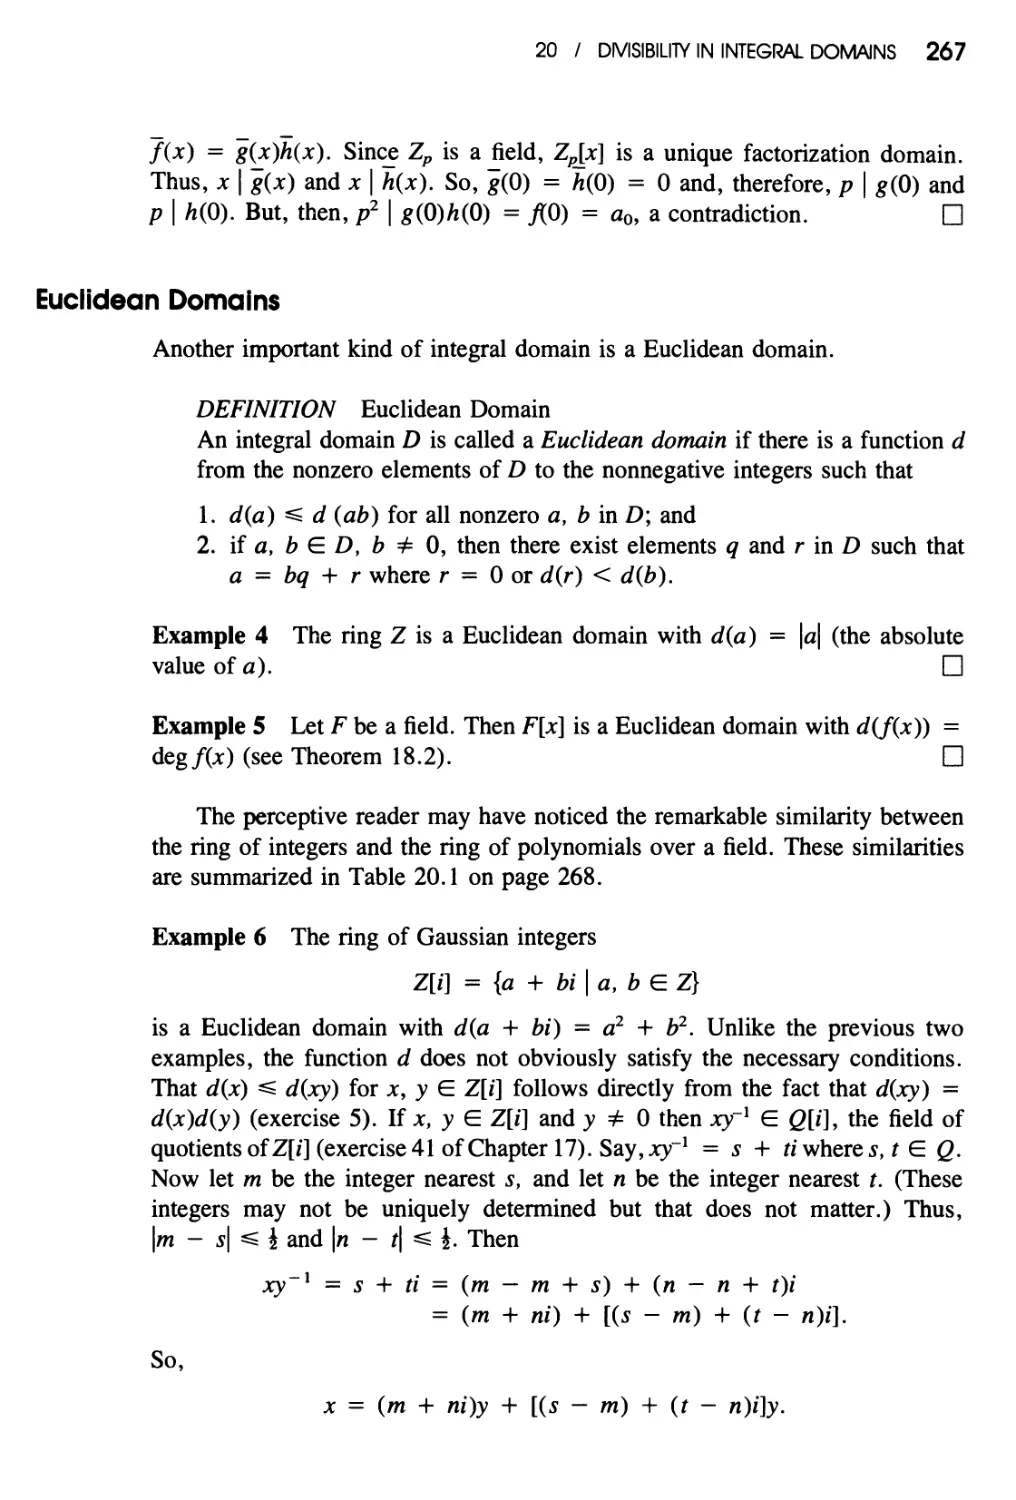 Euclidean Domains